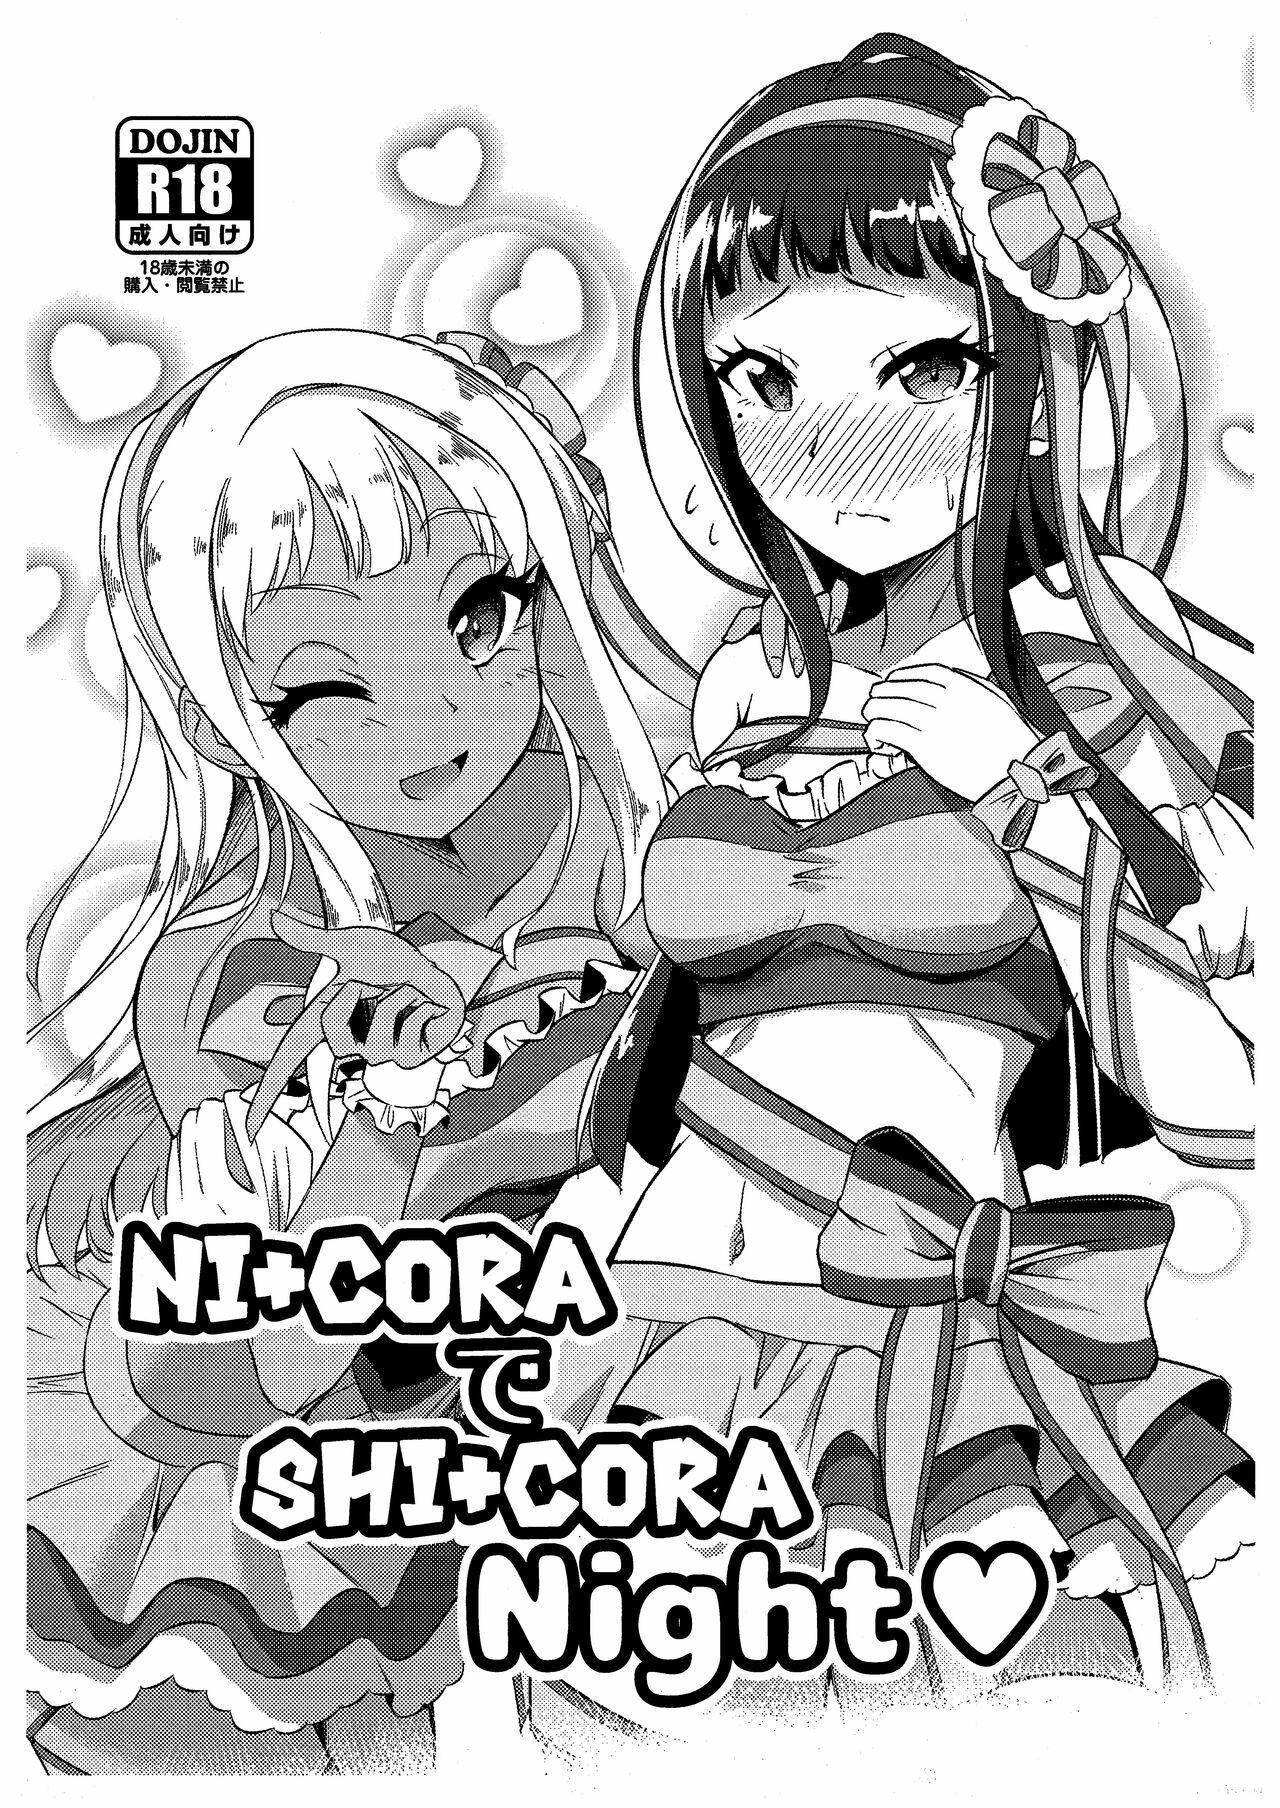 Colegiala NI+CORA de SHI+CORA Night - Tokyo 7th sisters Cam Girl - Page 1